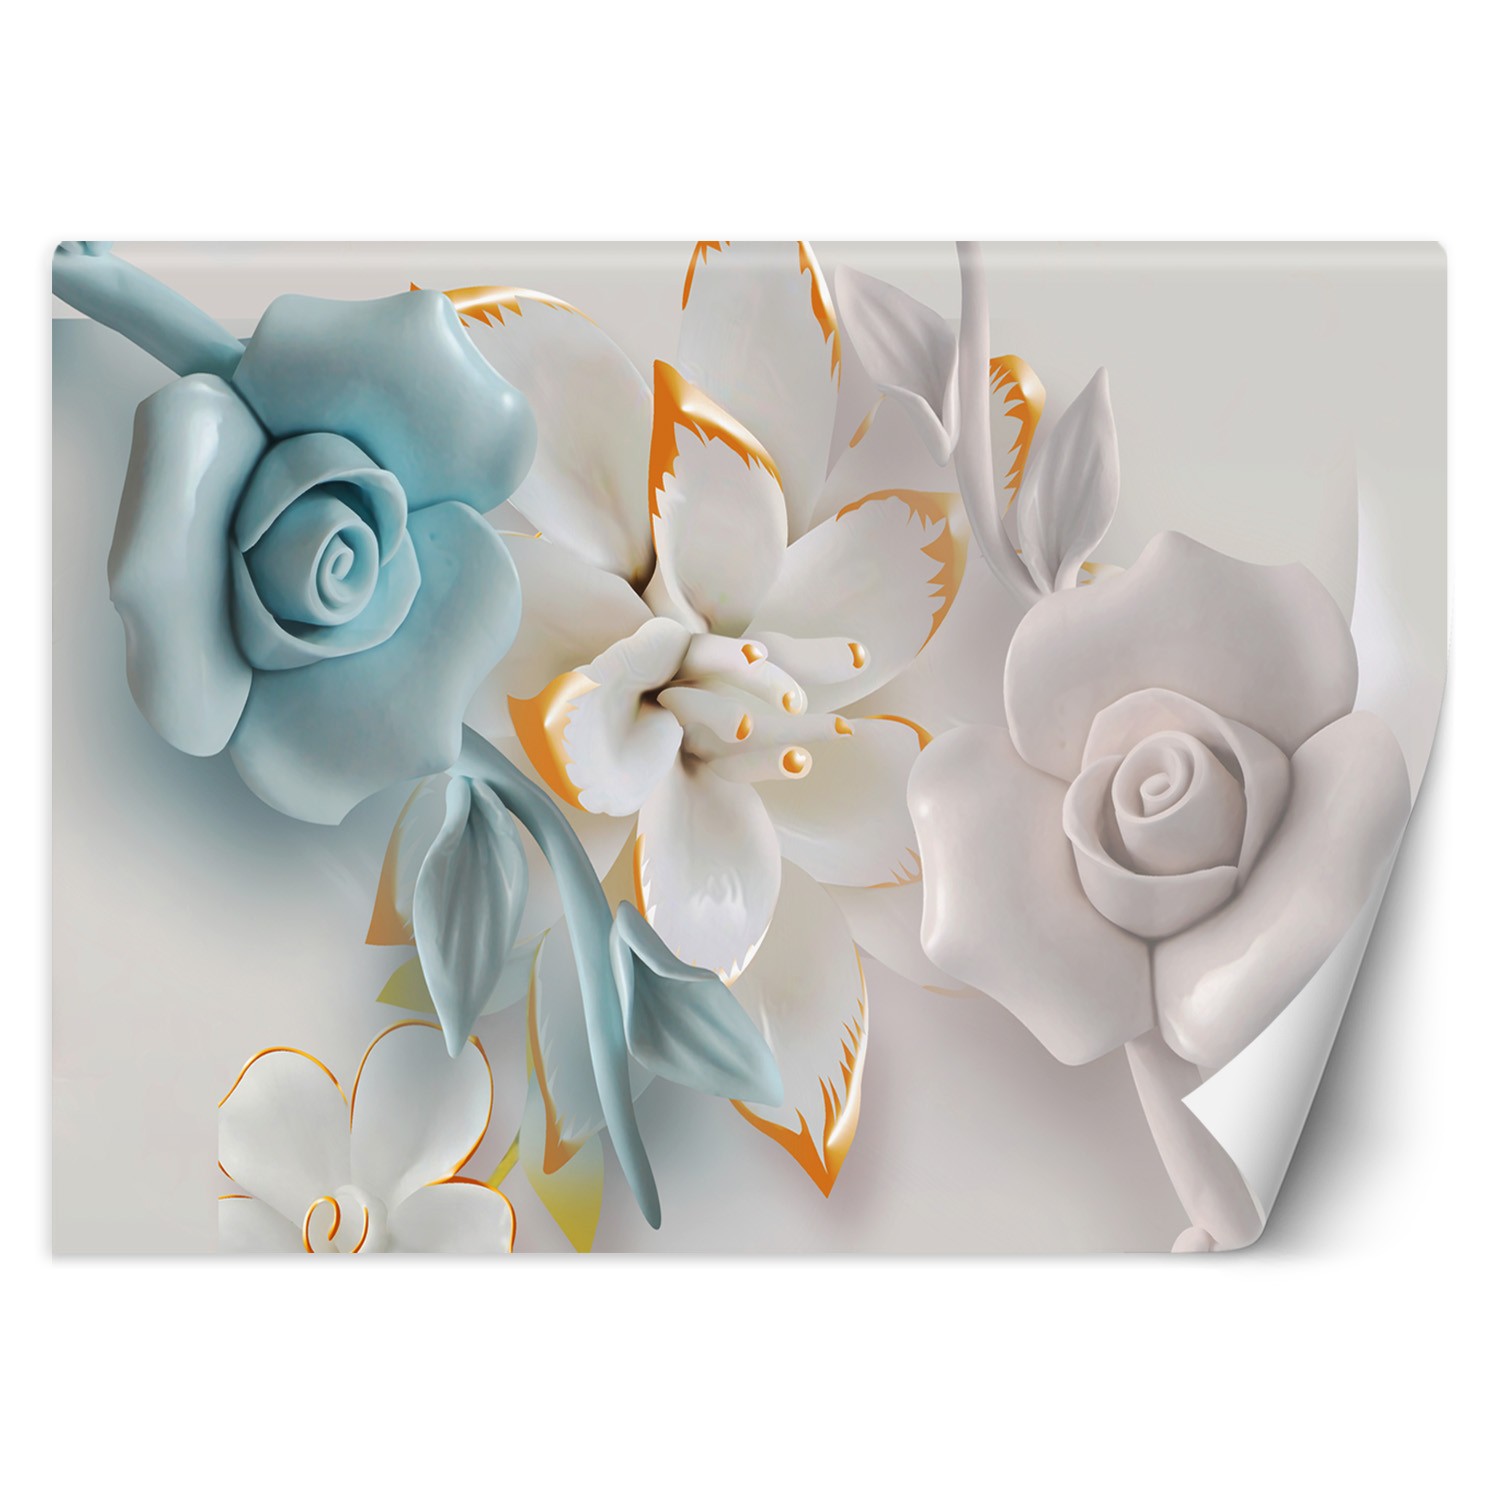 Trend24 – Behang – Bloemen Abstract – Vliesbehang – Fotobehang 3D – Behang Woonkamer – 450x315x2 cm – Incl. behanglijm